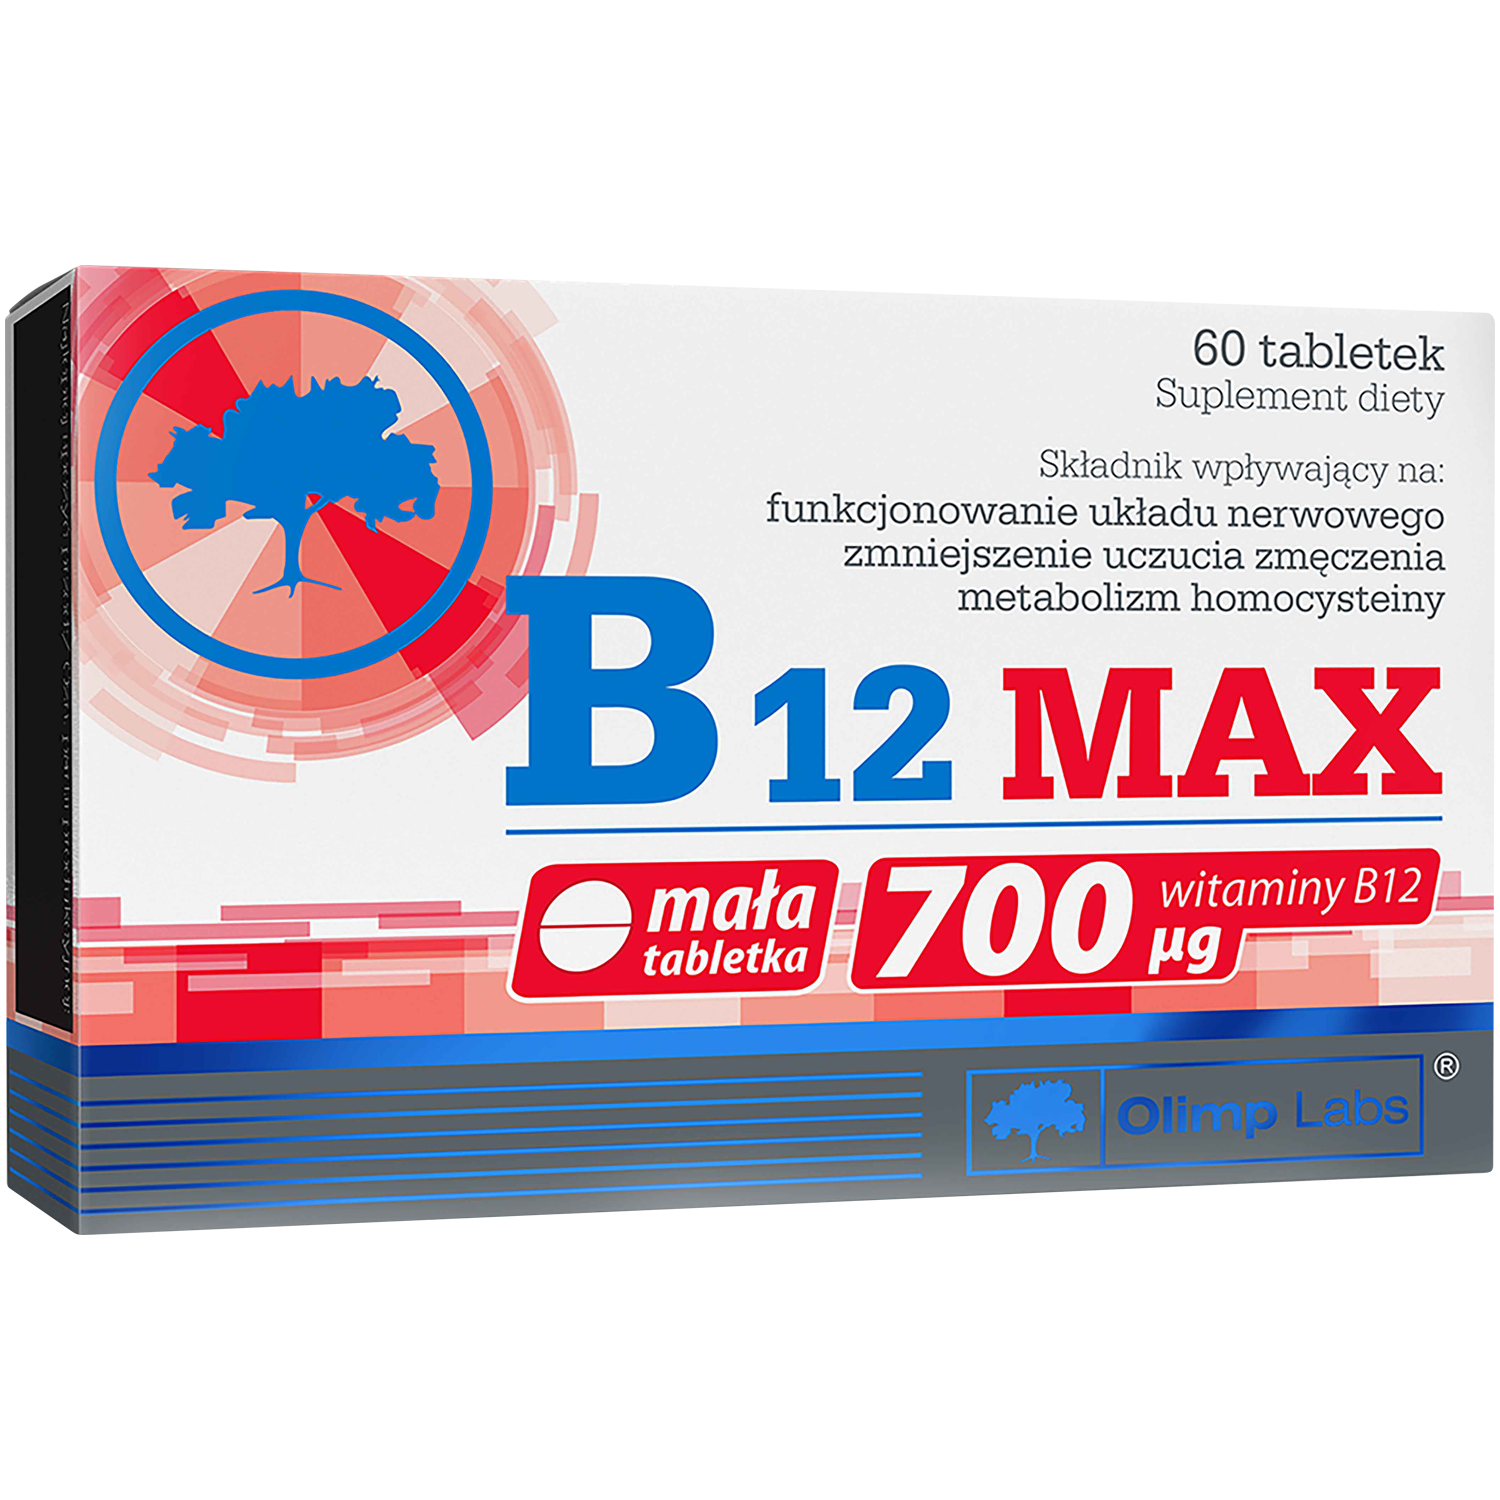 linea detox биологически активная добавка 60 таблеток 1 упаковка Olimp B12 Max биологически активная добавка, 60 таблеток/1 упаковка